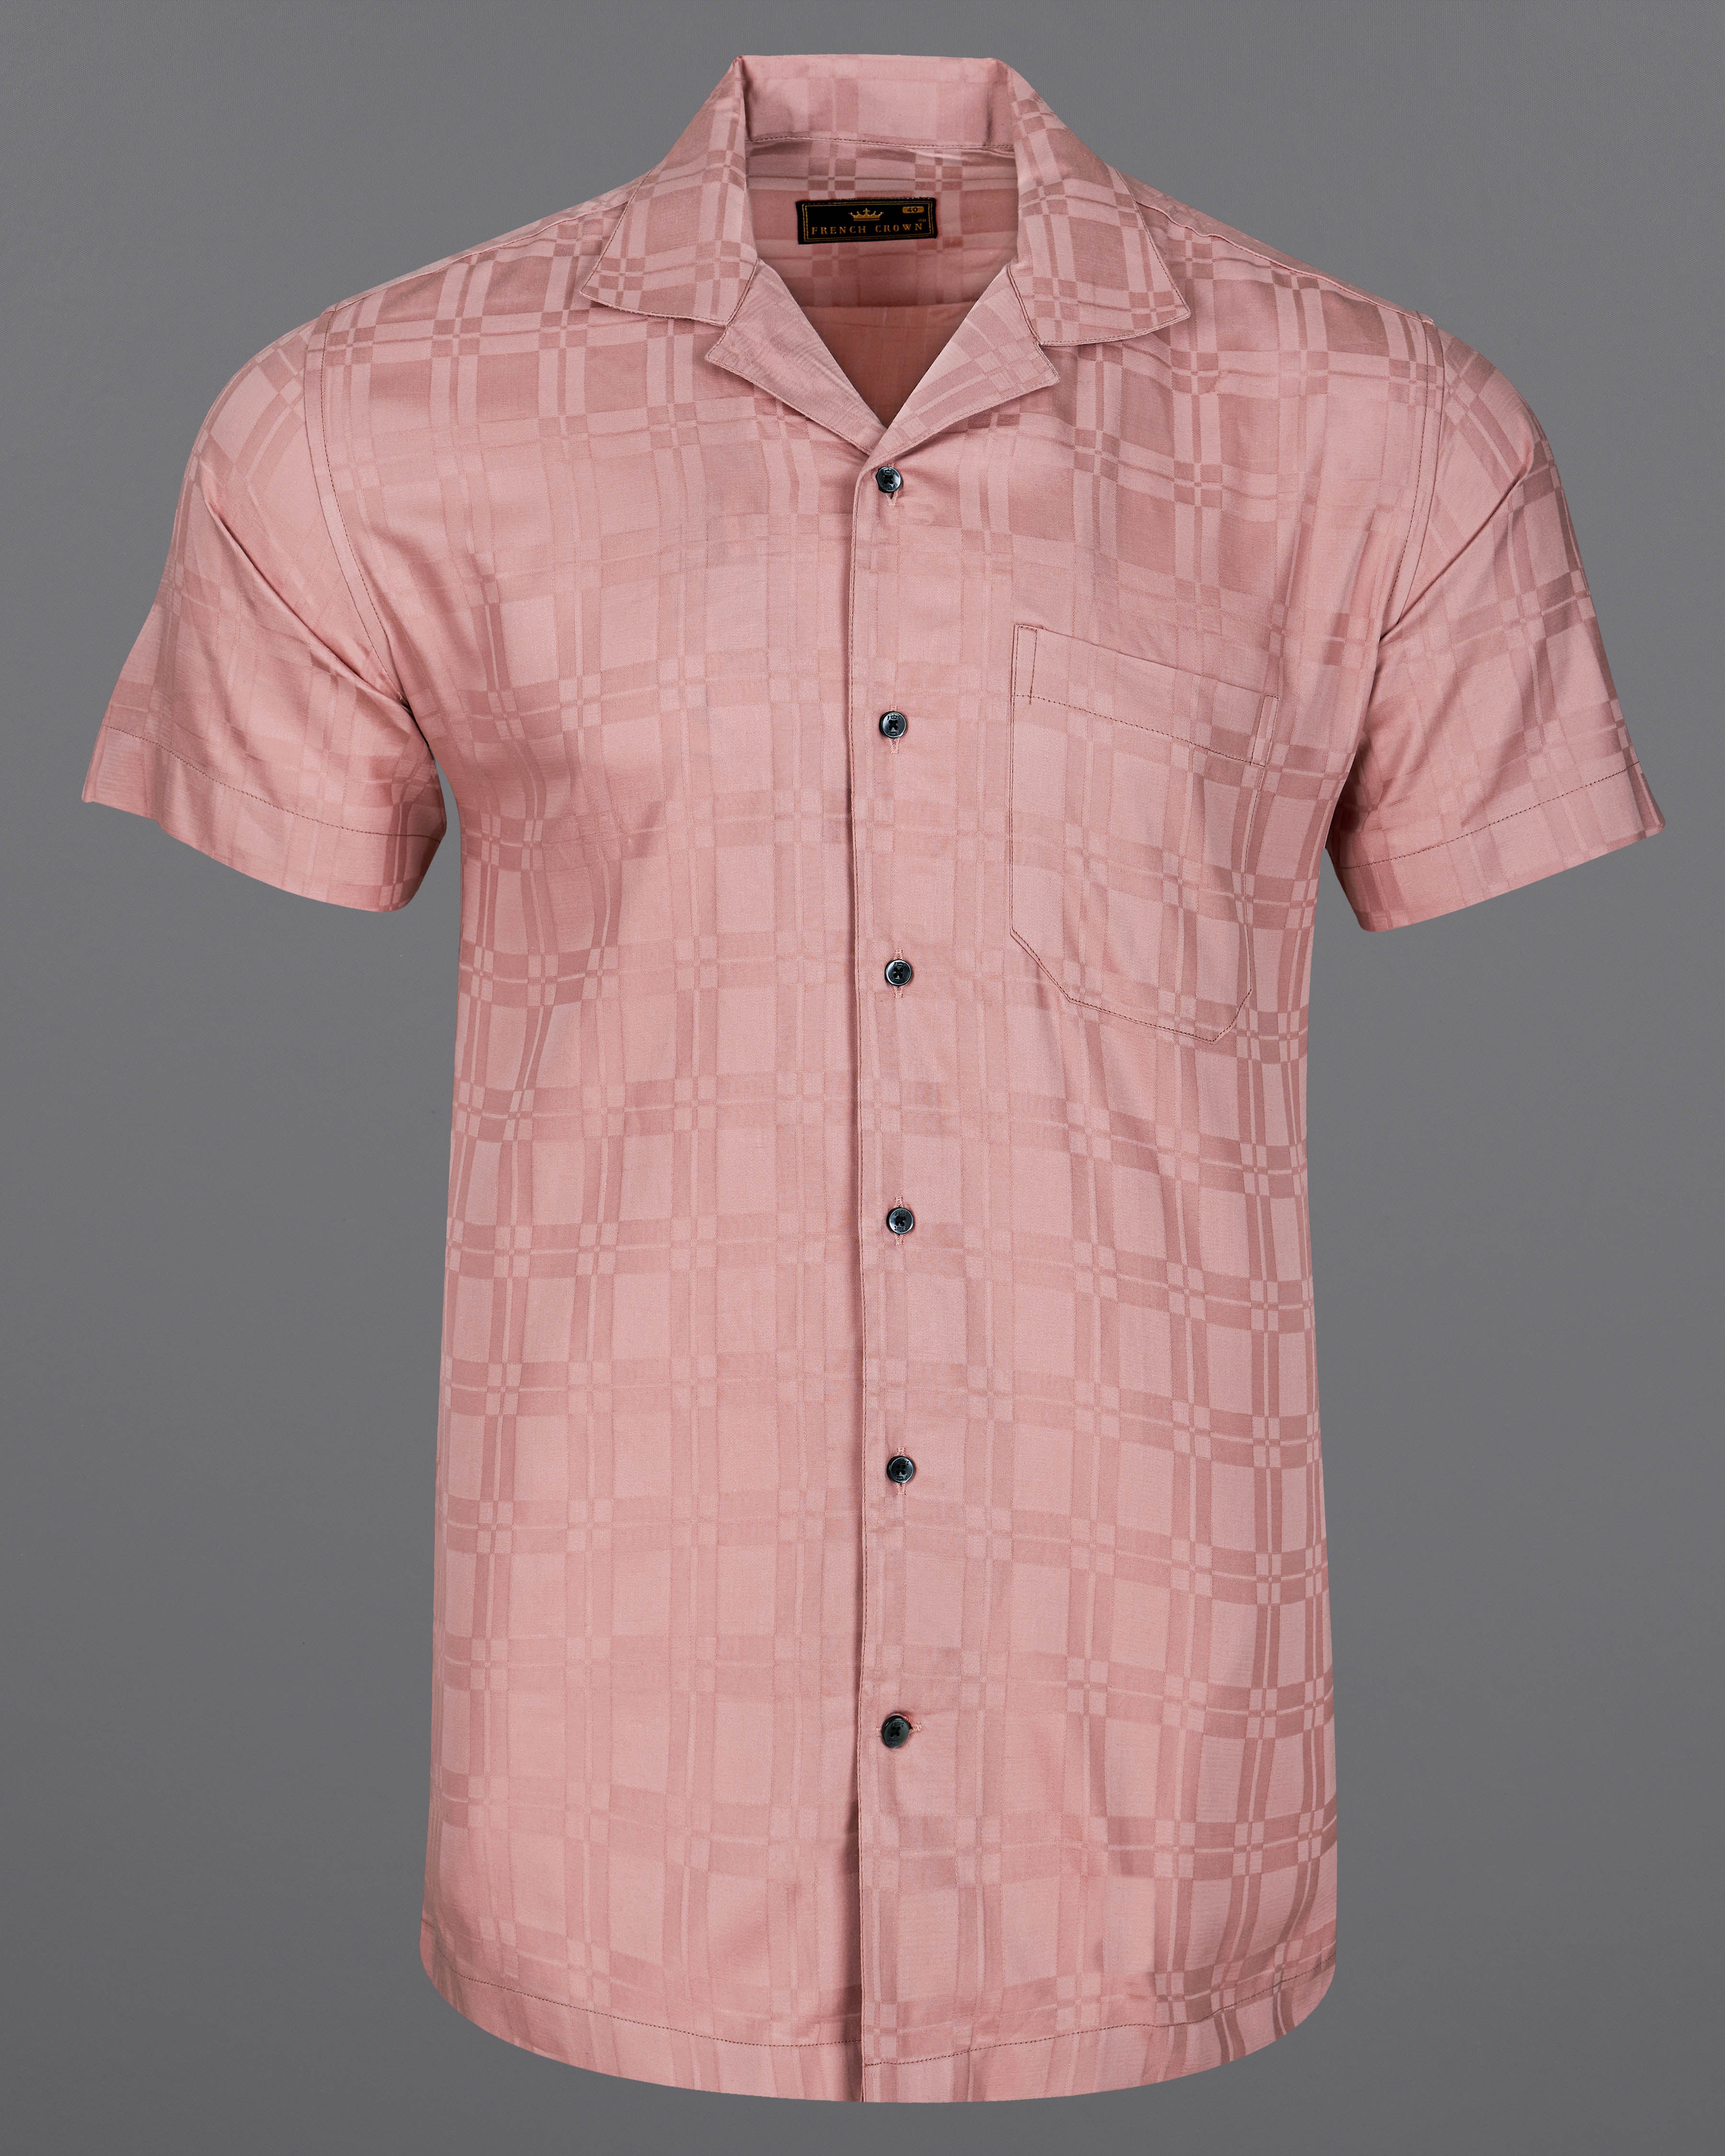 Oriental Pink Box Textured Dobby Premium Giza Cotton Shirt  8745-CC-BLK-38,8745-CC-BLK-H-38,8745-CC-BLK-39,8745-CC-BLK-H-39,8745-CC-BLK-40,8745-CC-BLK-H-40,8745-CC-BLK-42,8745-CC-BLK-H-42,8745-CC-BLK-44,8745-CC-BLK-H-44,8745-CC-BLK-46,8745-CC-BLK-H-46,8745-CC-BLK-48,8745-CC-BLK-H-48,8745-CC-BLK-50,8745-CC-BLK-H-50,8745-CC-BLK-52,8745-CC-BLK-H-52